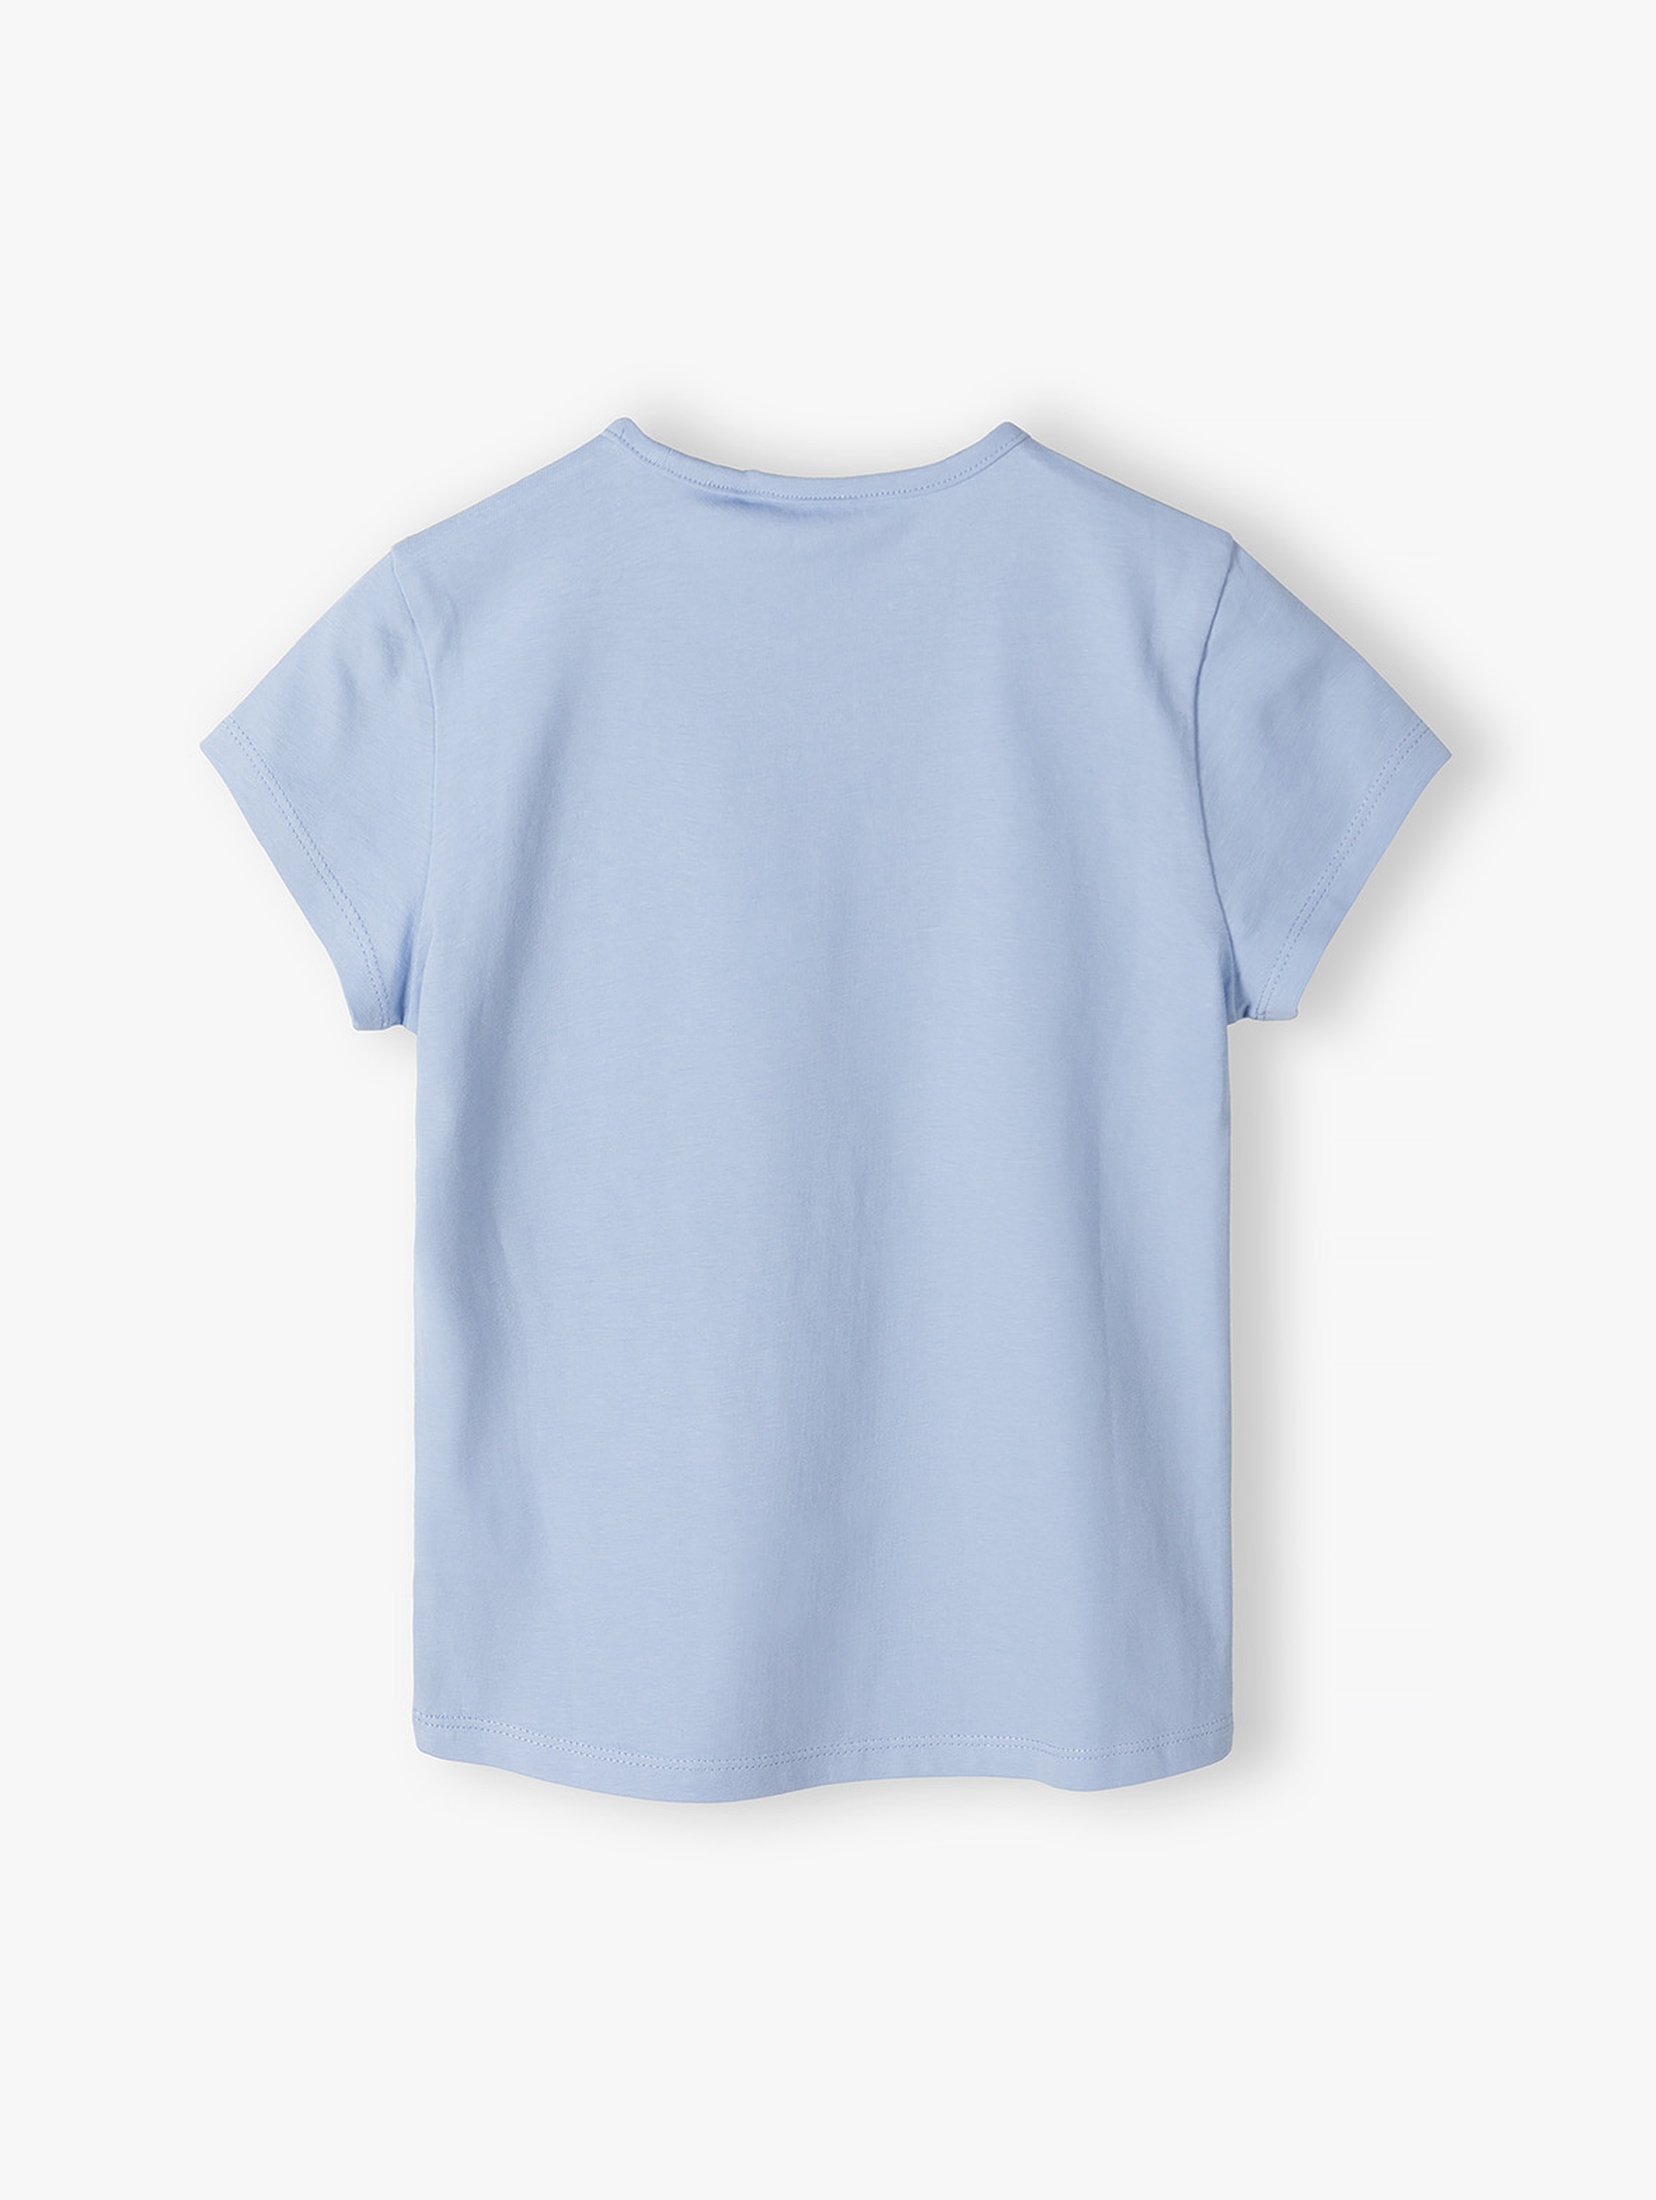 Niebieska koszulka dziewczęca z jednorożcem 5.10.15.